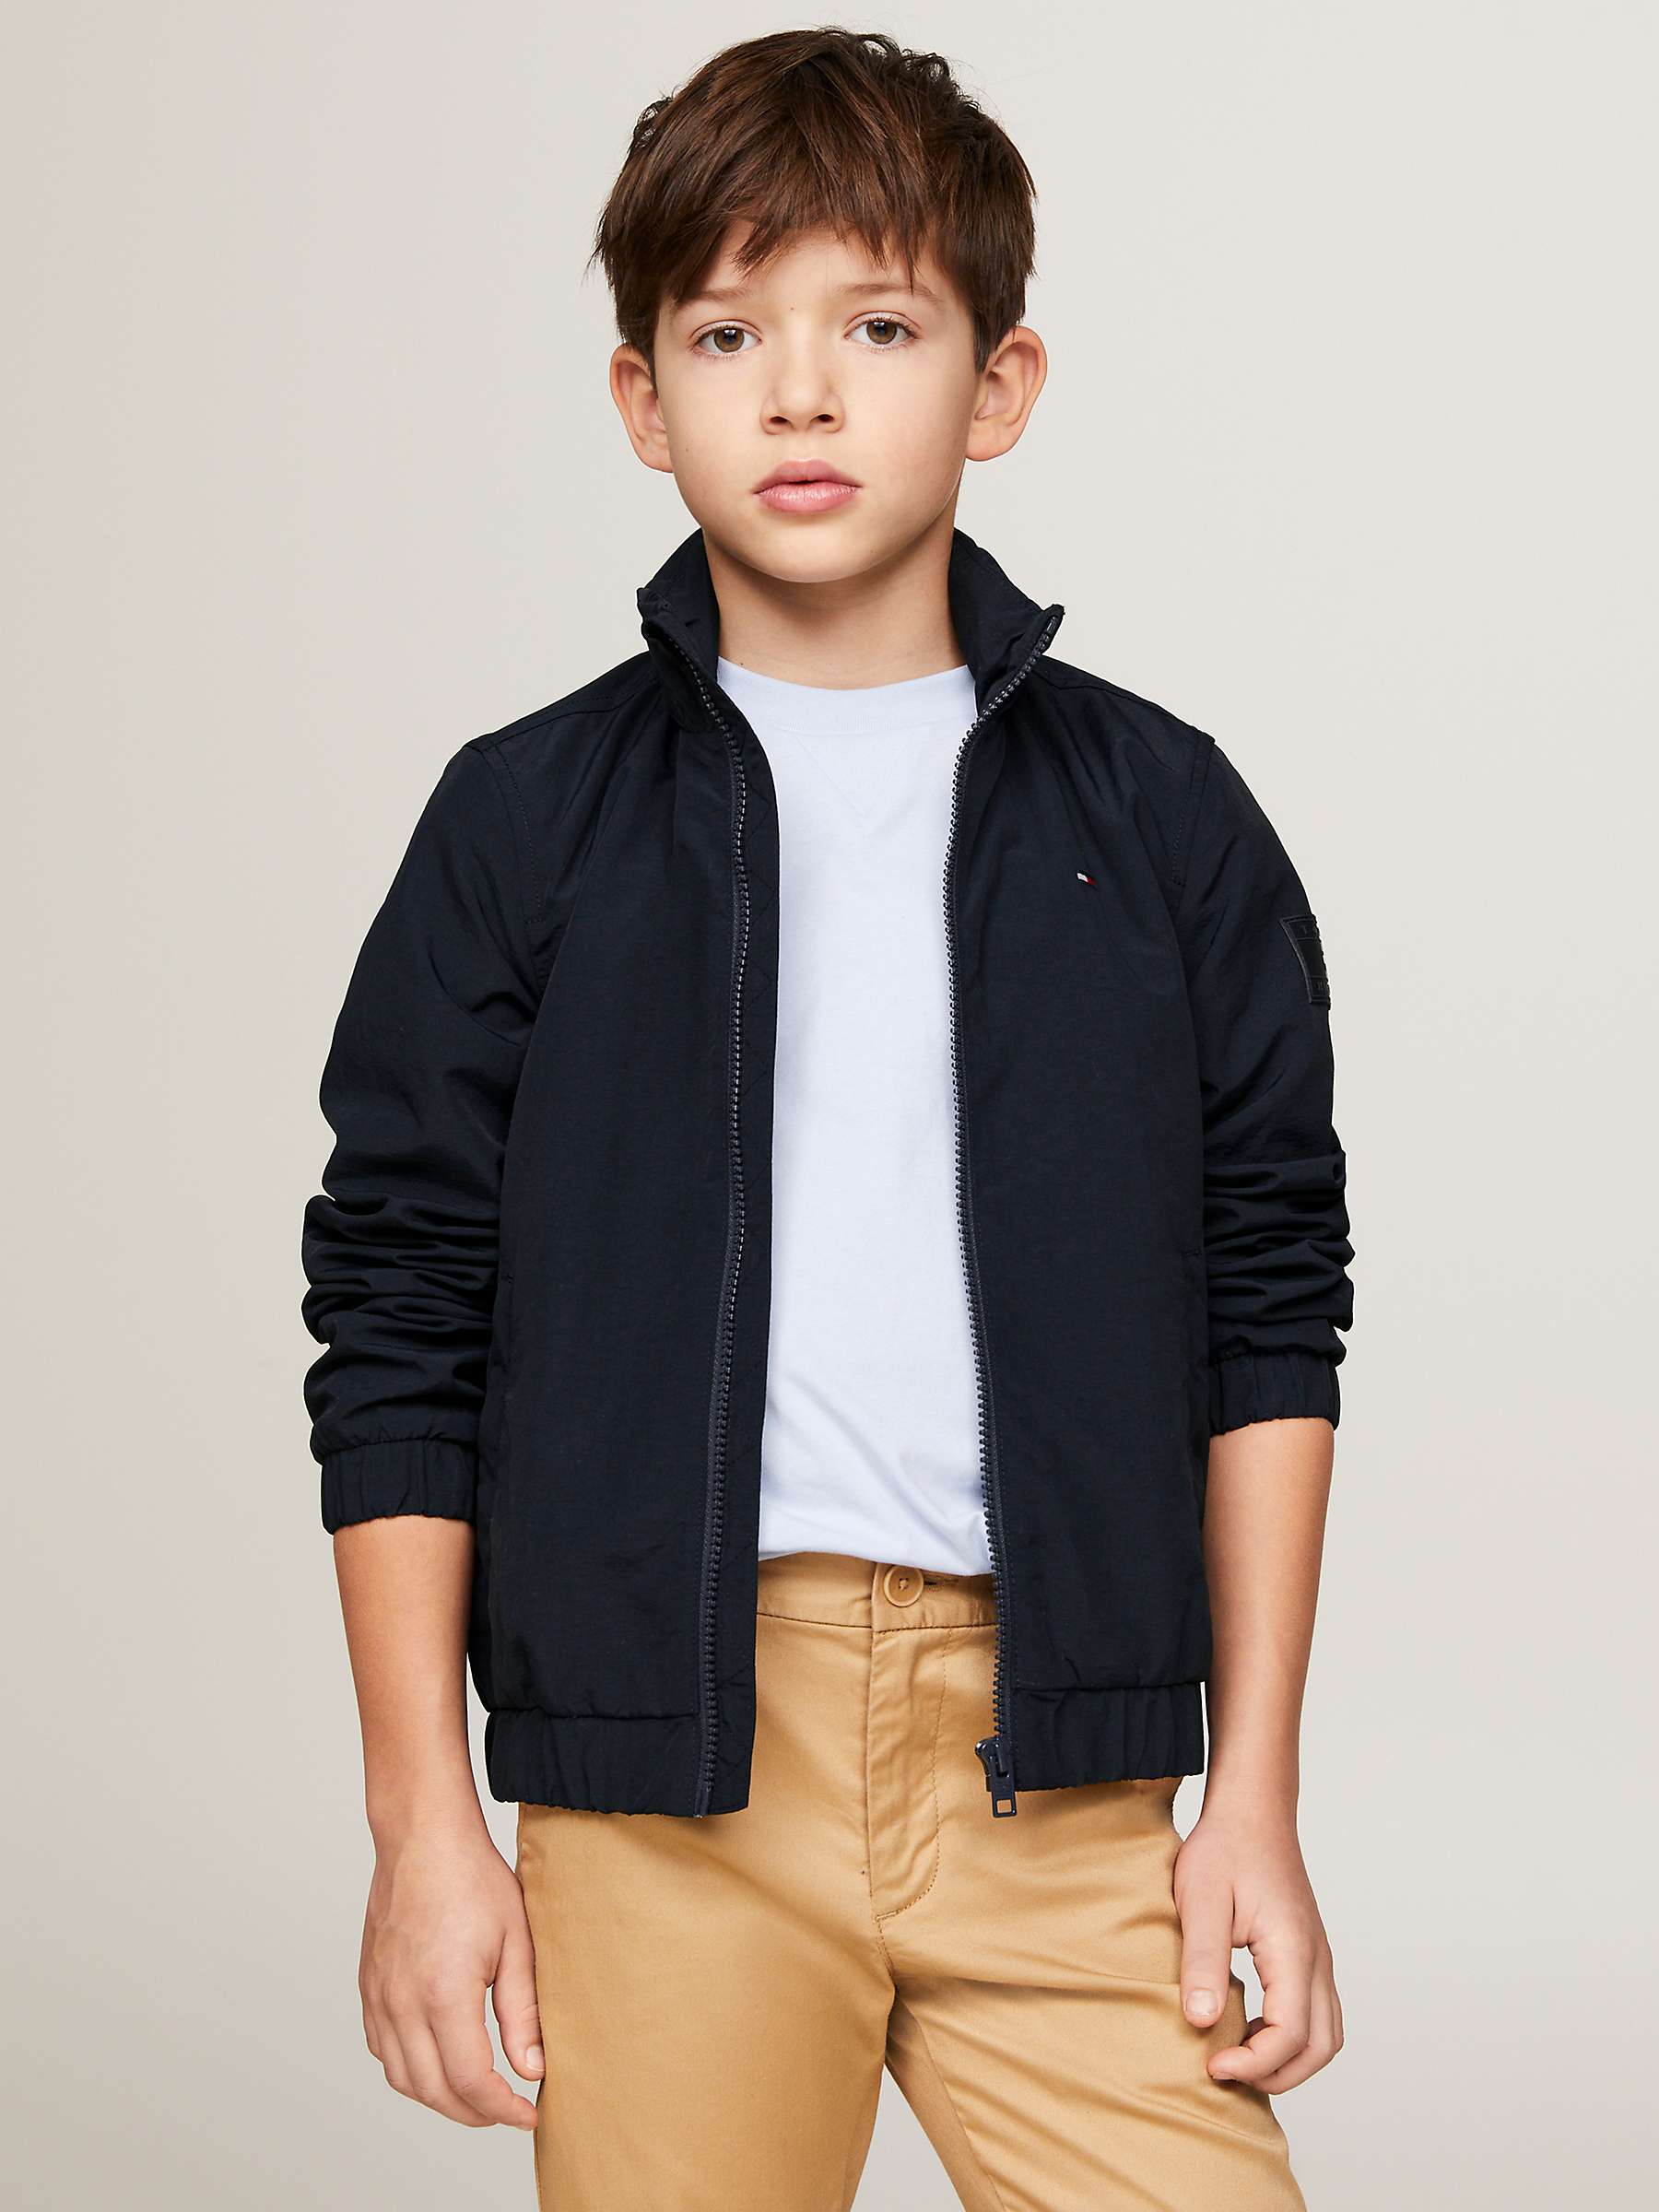 Buy Tommy Hilfiger Kids' Essential Jacket, Desert Sky Online at johnlewis.com